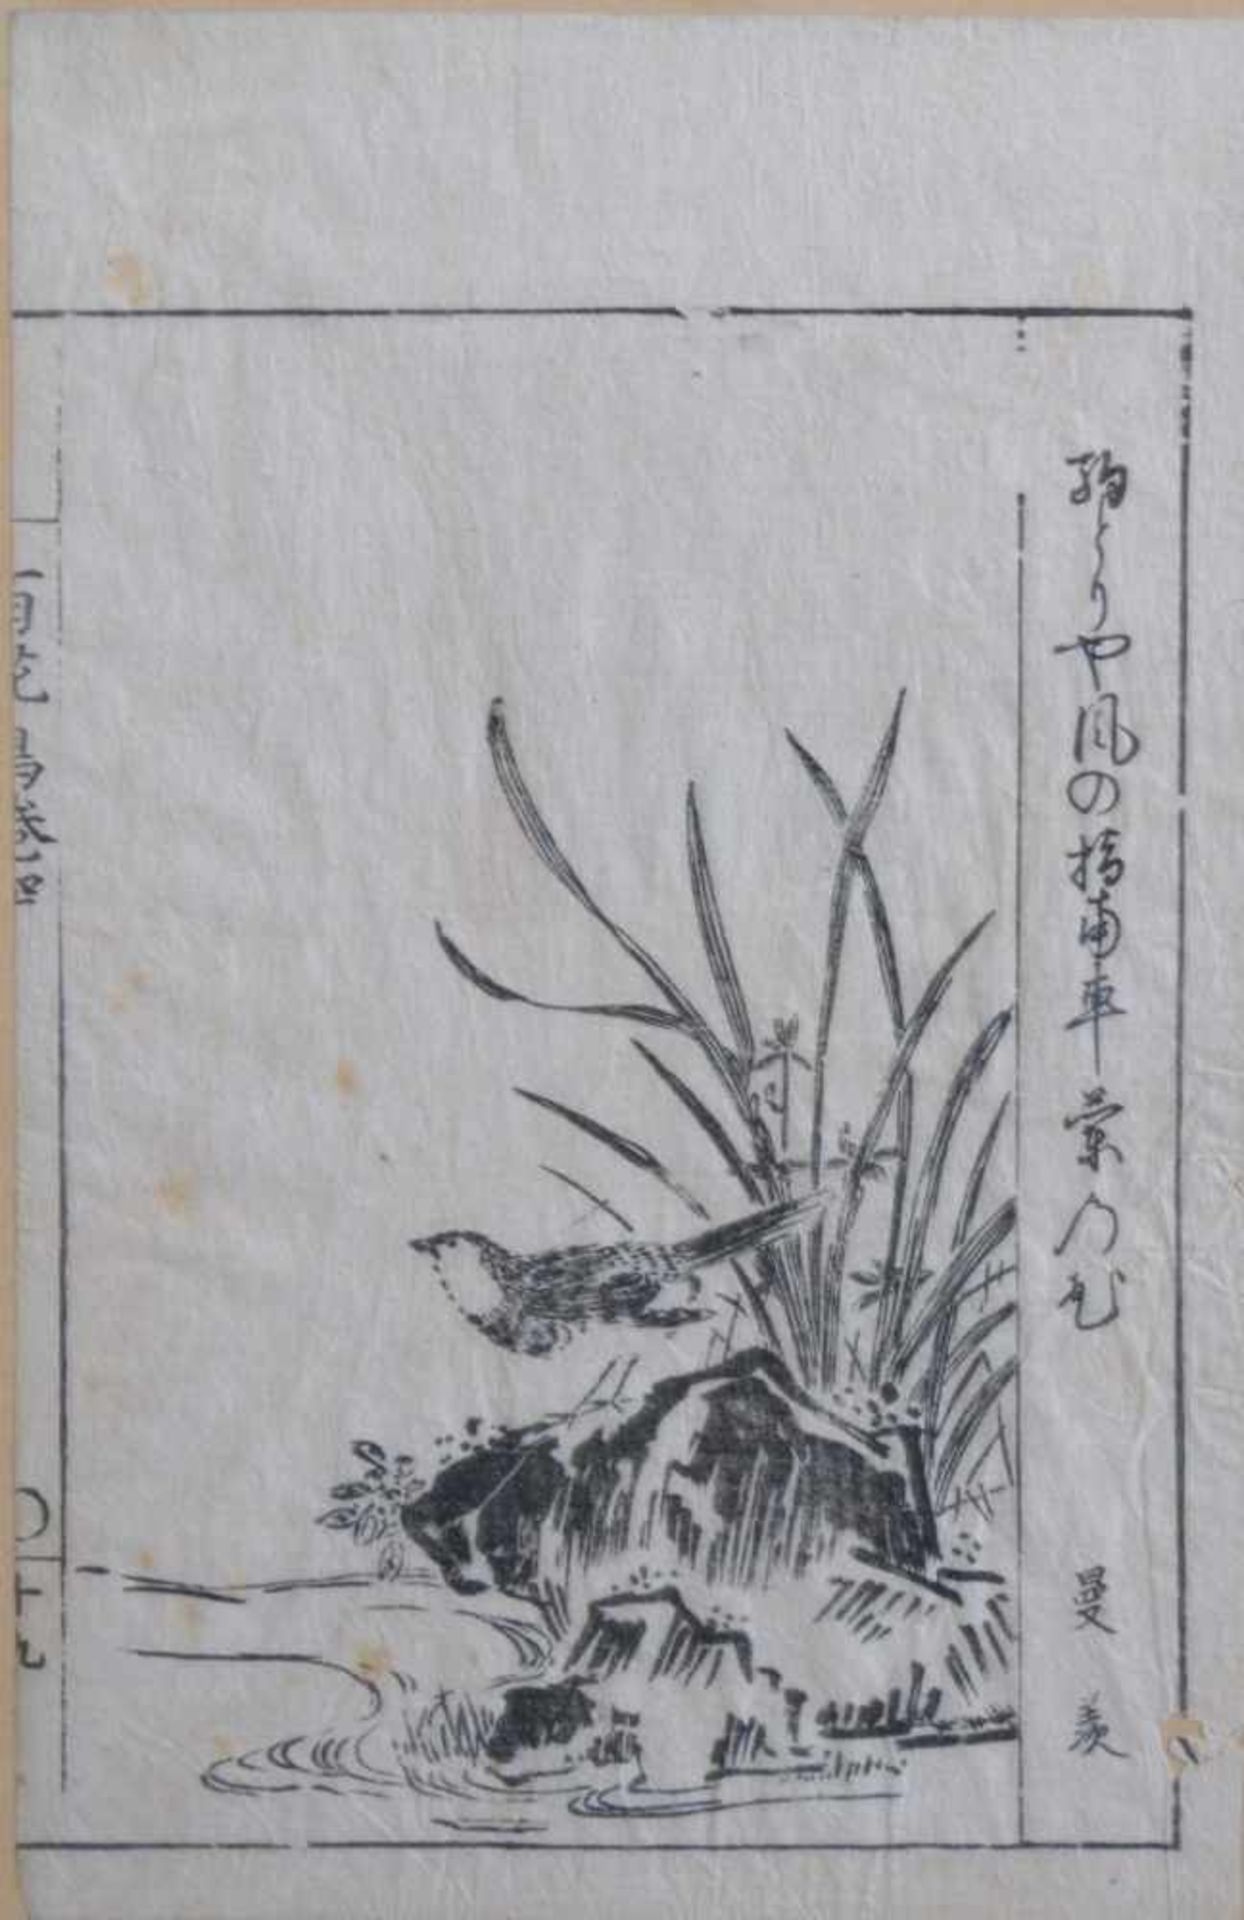 2 antike asiatische TuschezeichnungenUnterschiedliche Vogelmotive. Tusche auf Reispapier gemalt, - Bild 2 aus 3